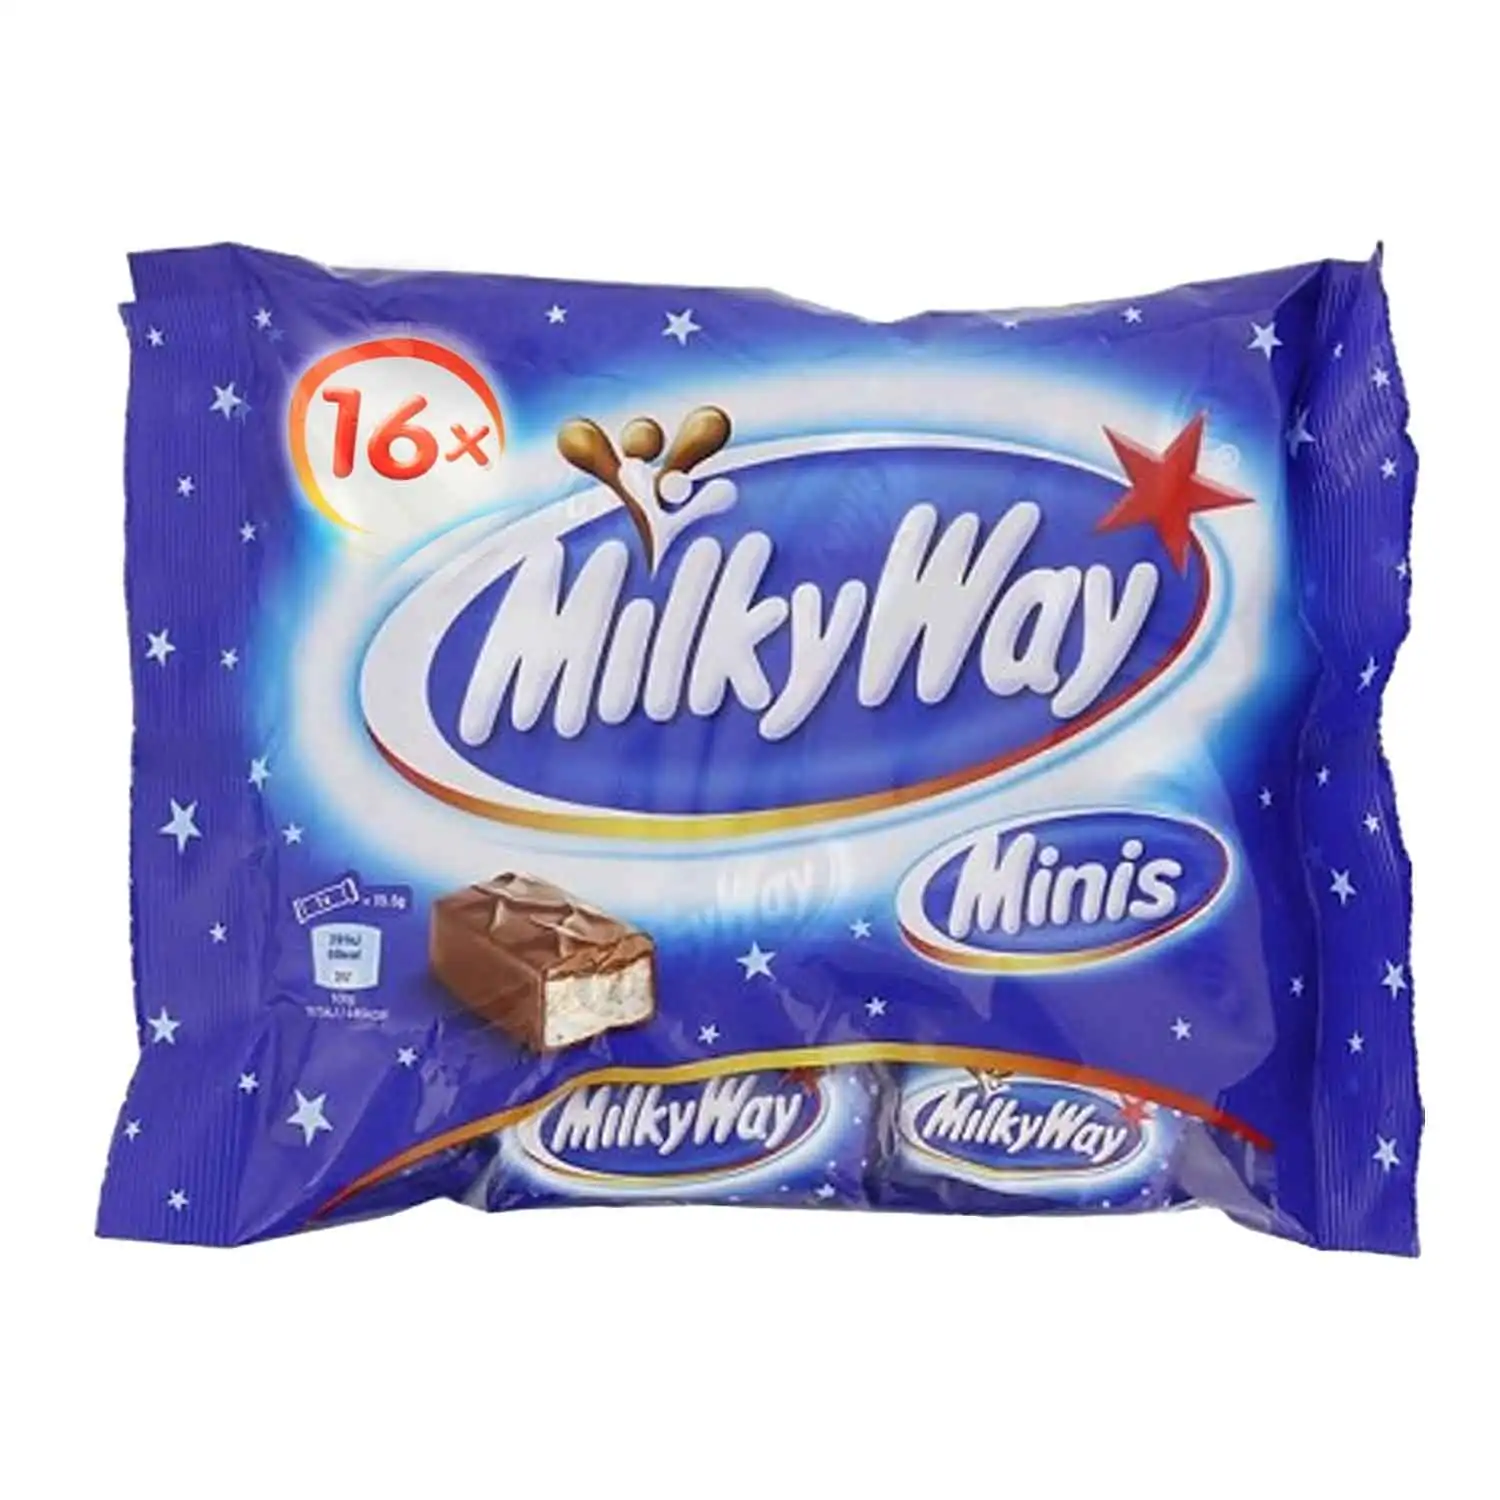 Milky Way minis 275g - Buy at Real Tobacco